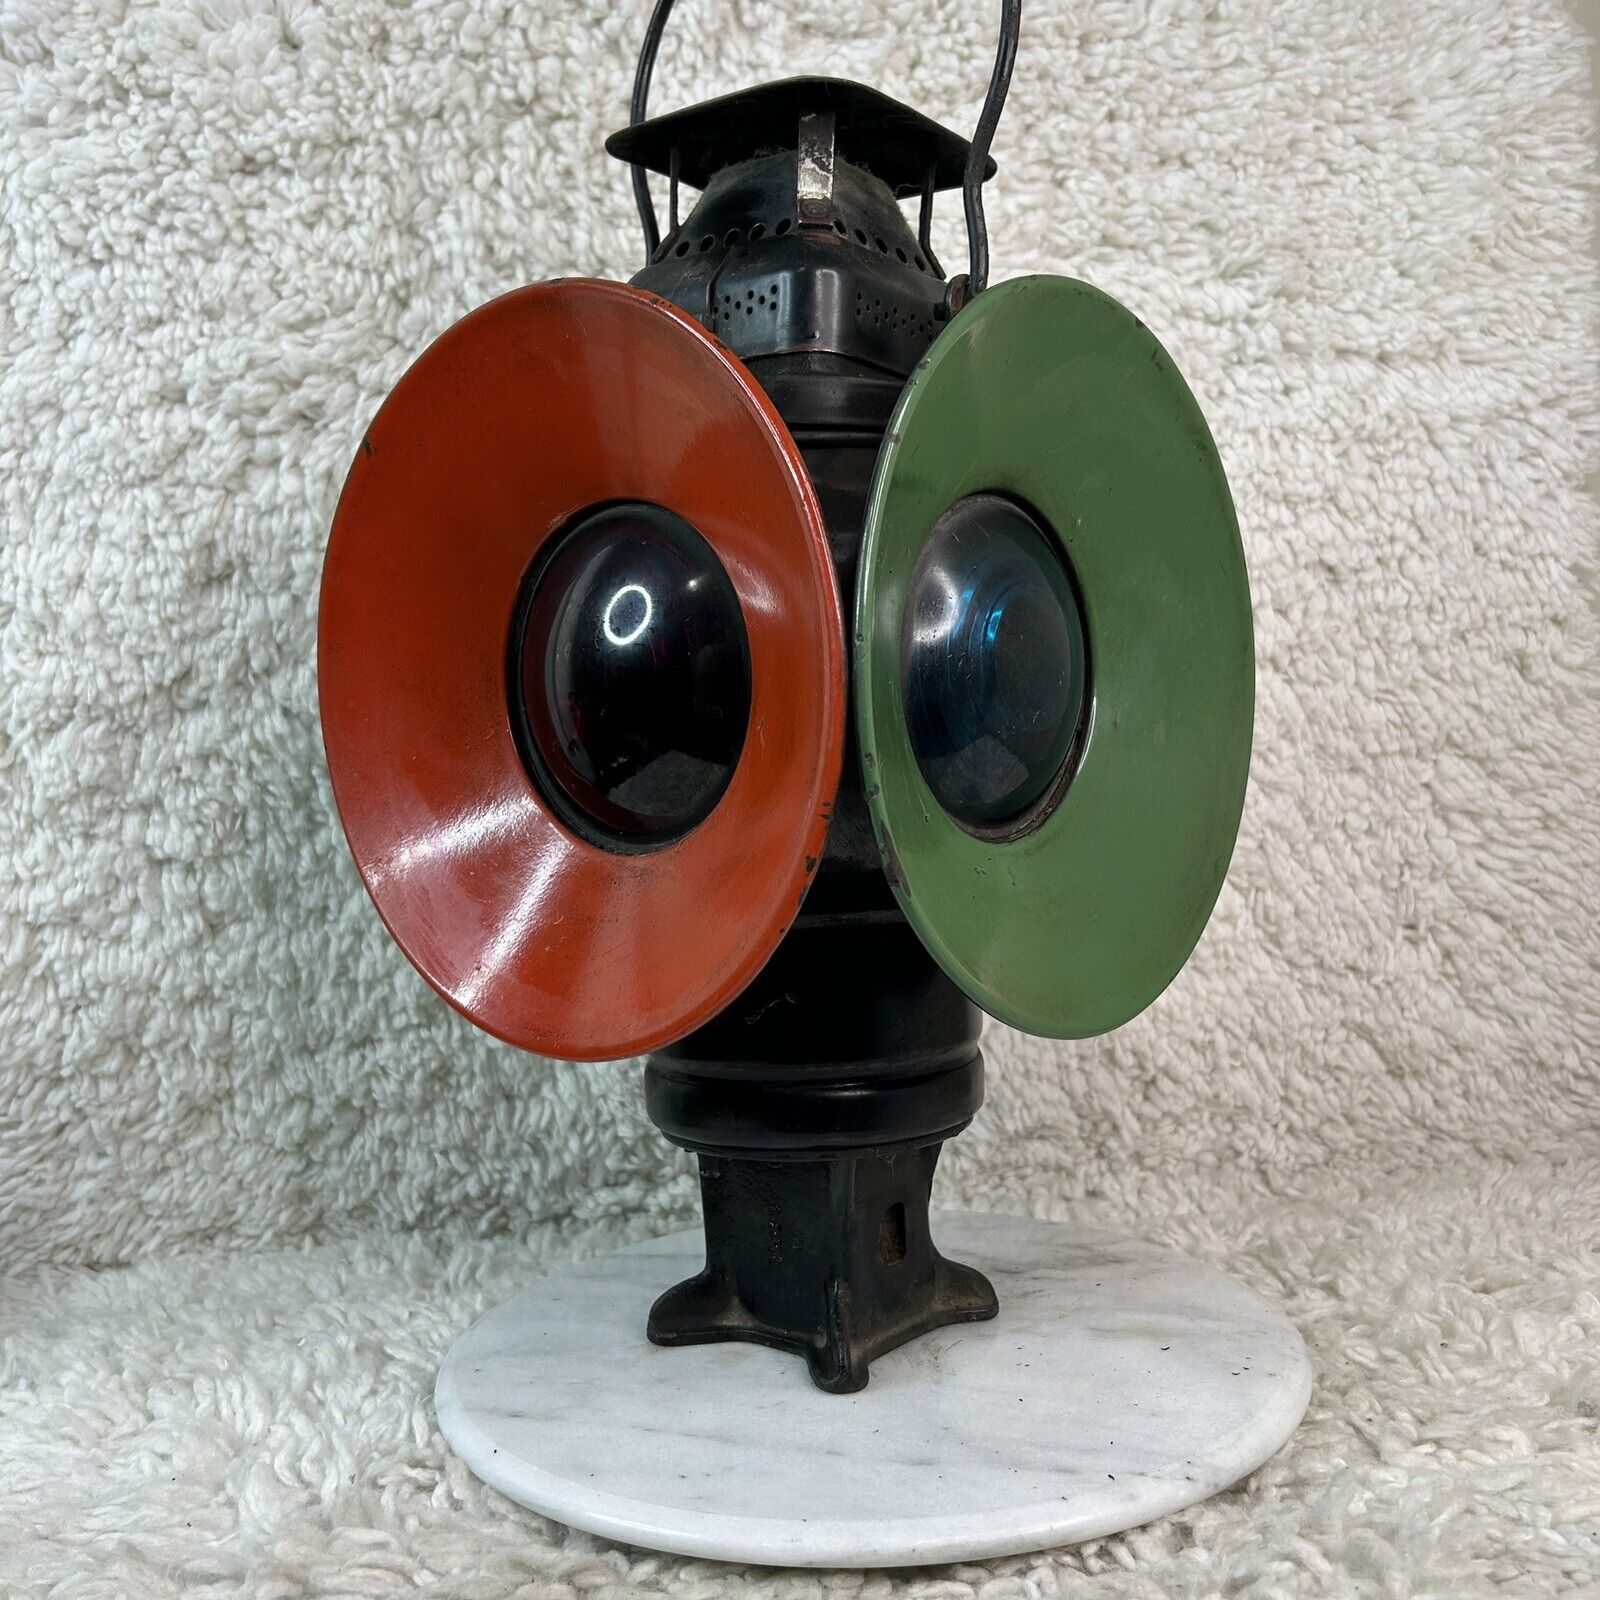 Vintage Antique Adlake Non Sweating RR 4-Way Kerosene Train Lamp Chicago